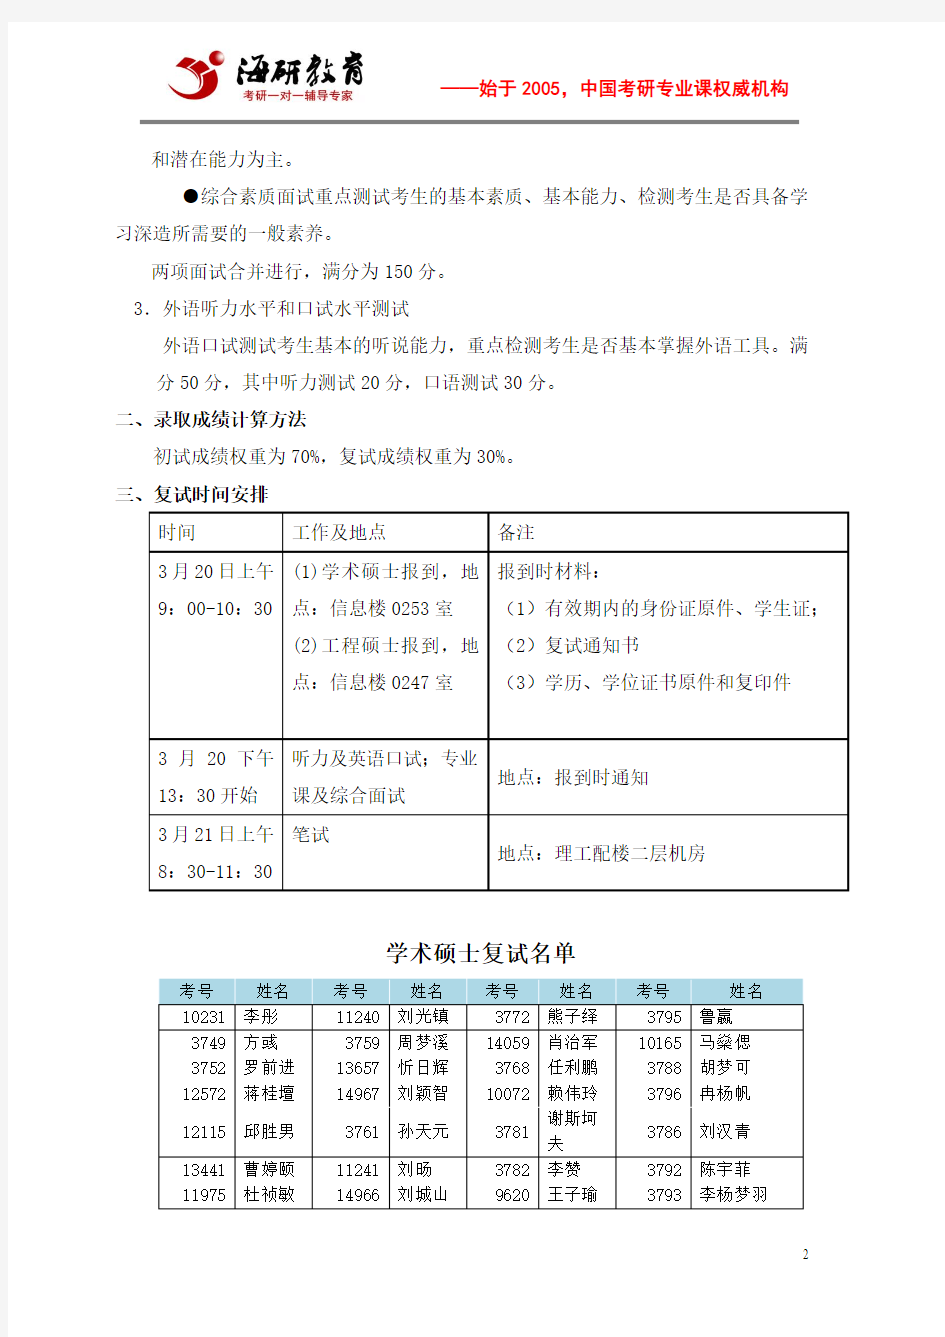 2015年中国人民大学信息学院硕士研究生招生考试复试实施办法、复试名单